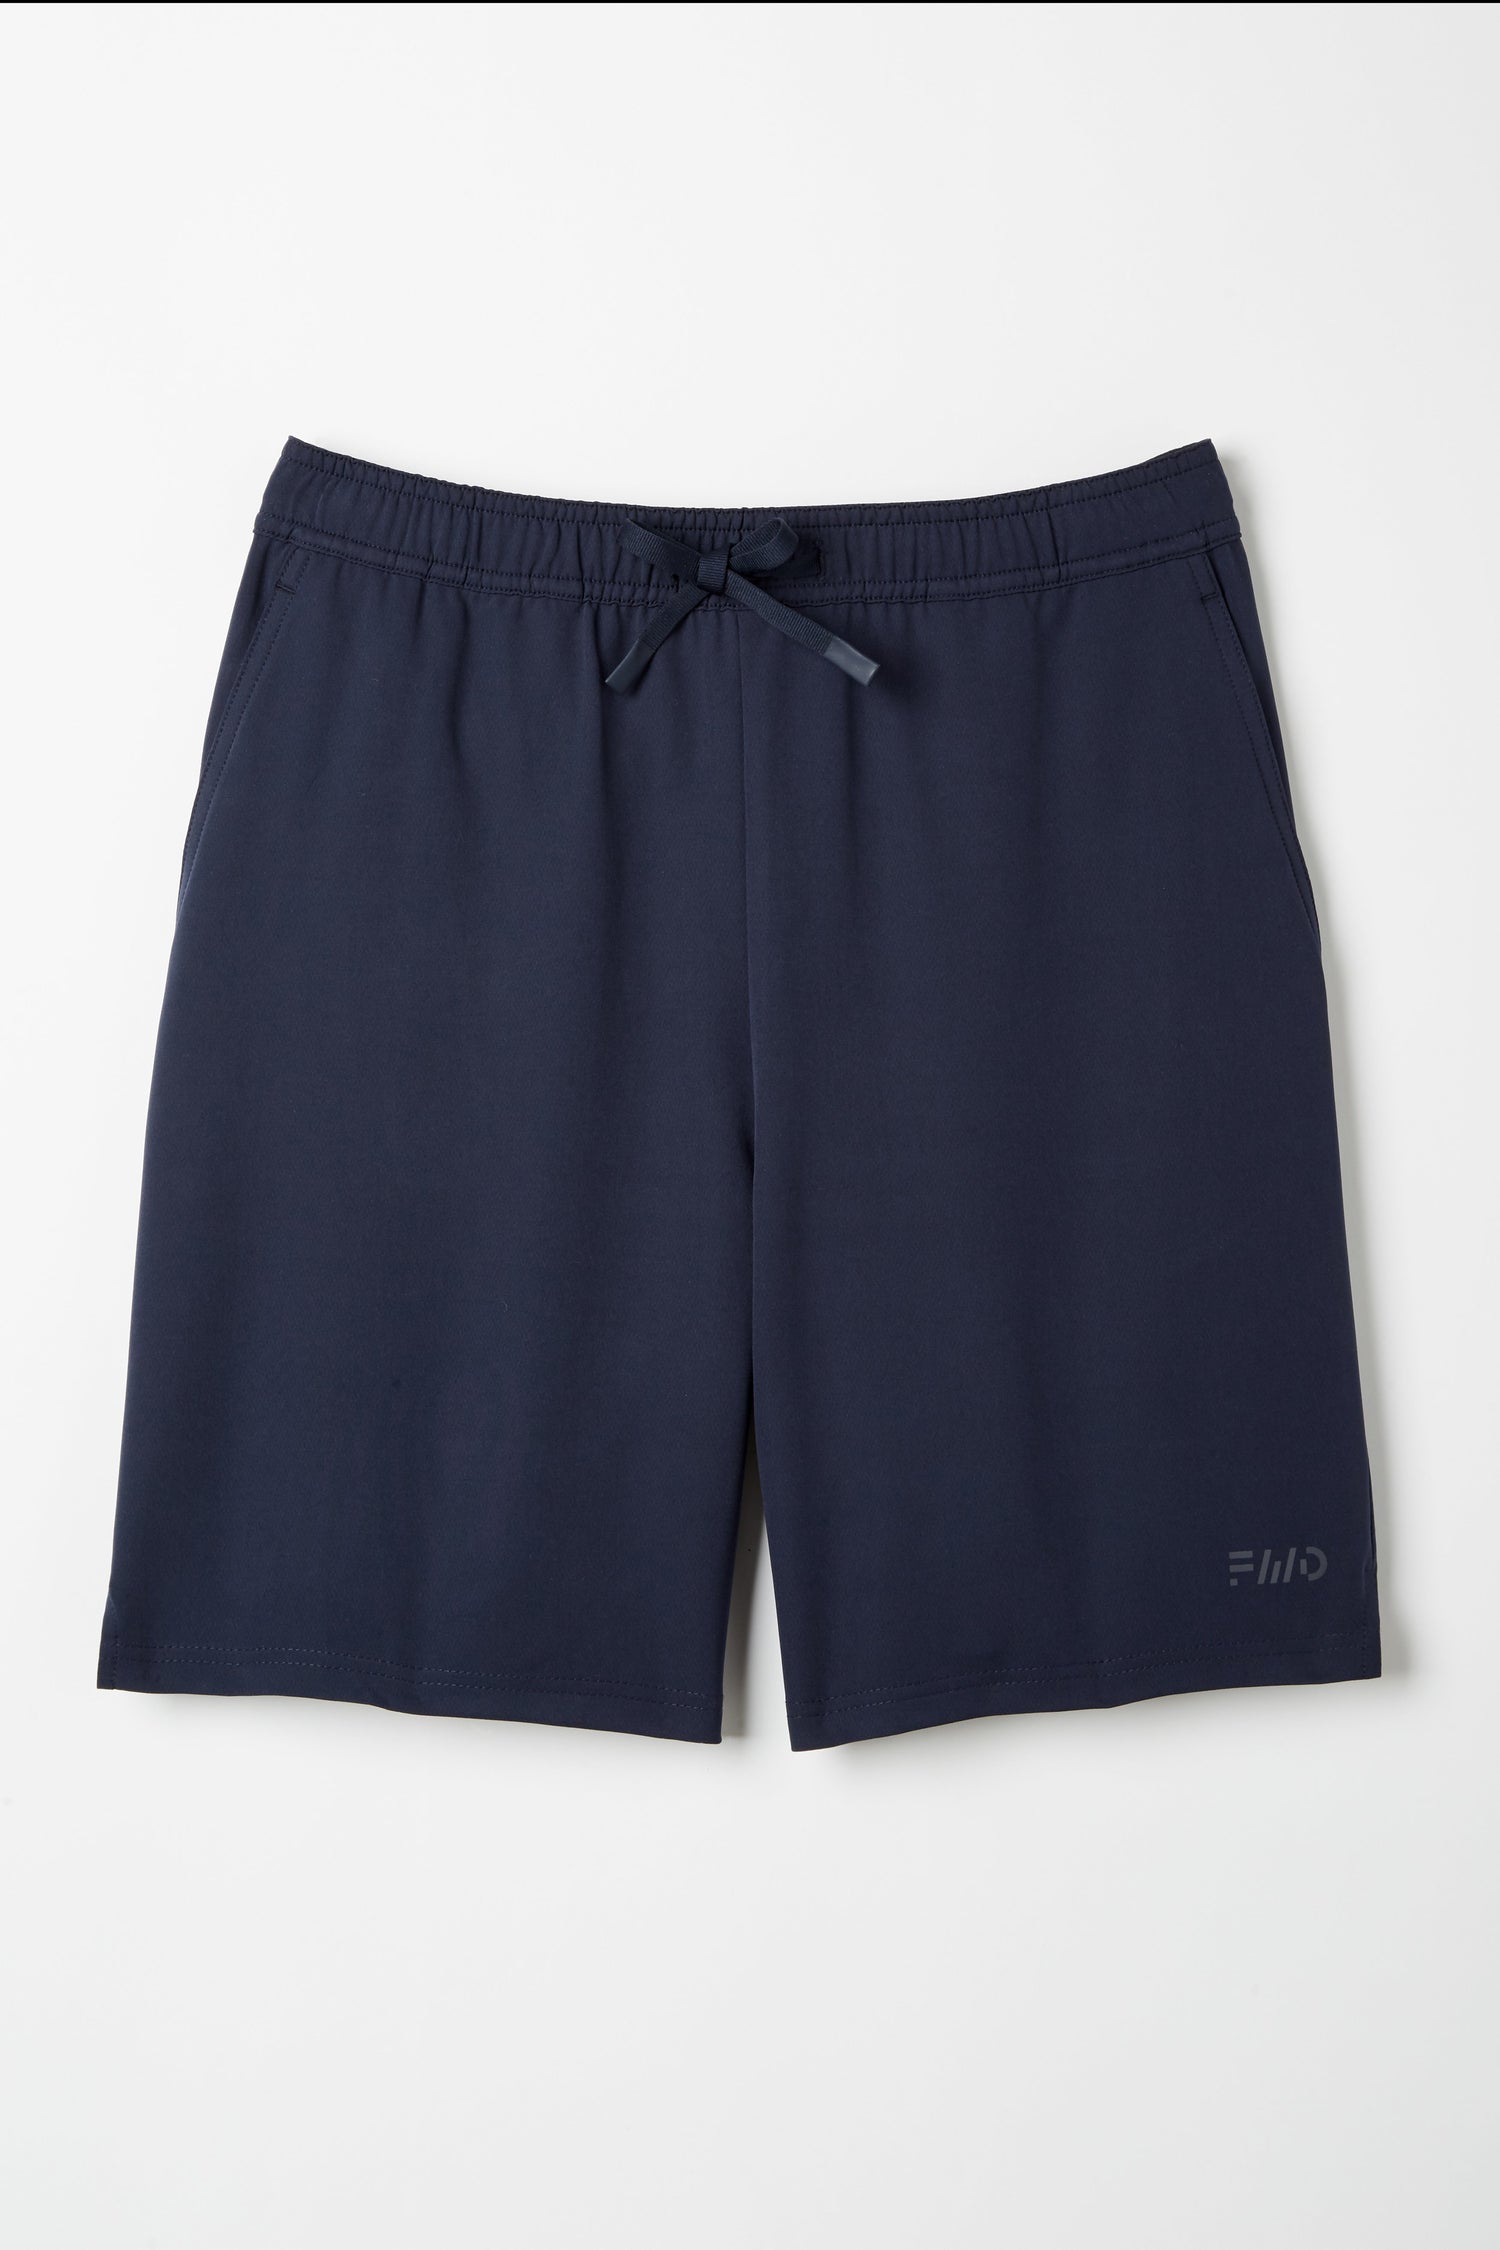 7898 - MVP Flex Twill Modern Fit Flat Front Shorts (Mens) - School Apparel